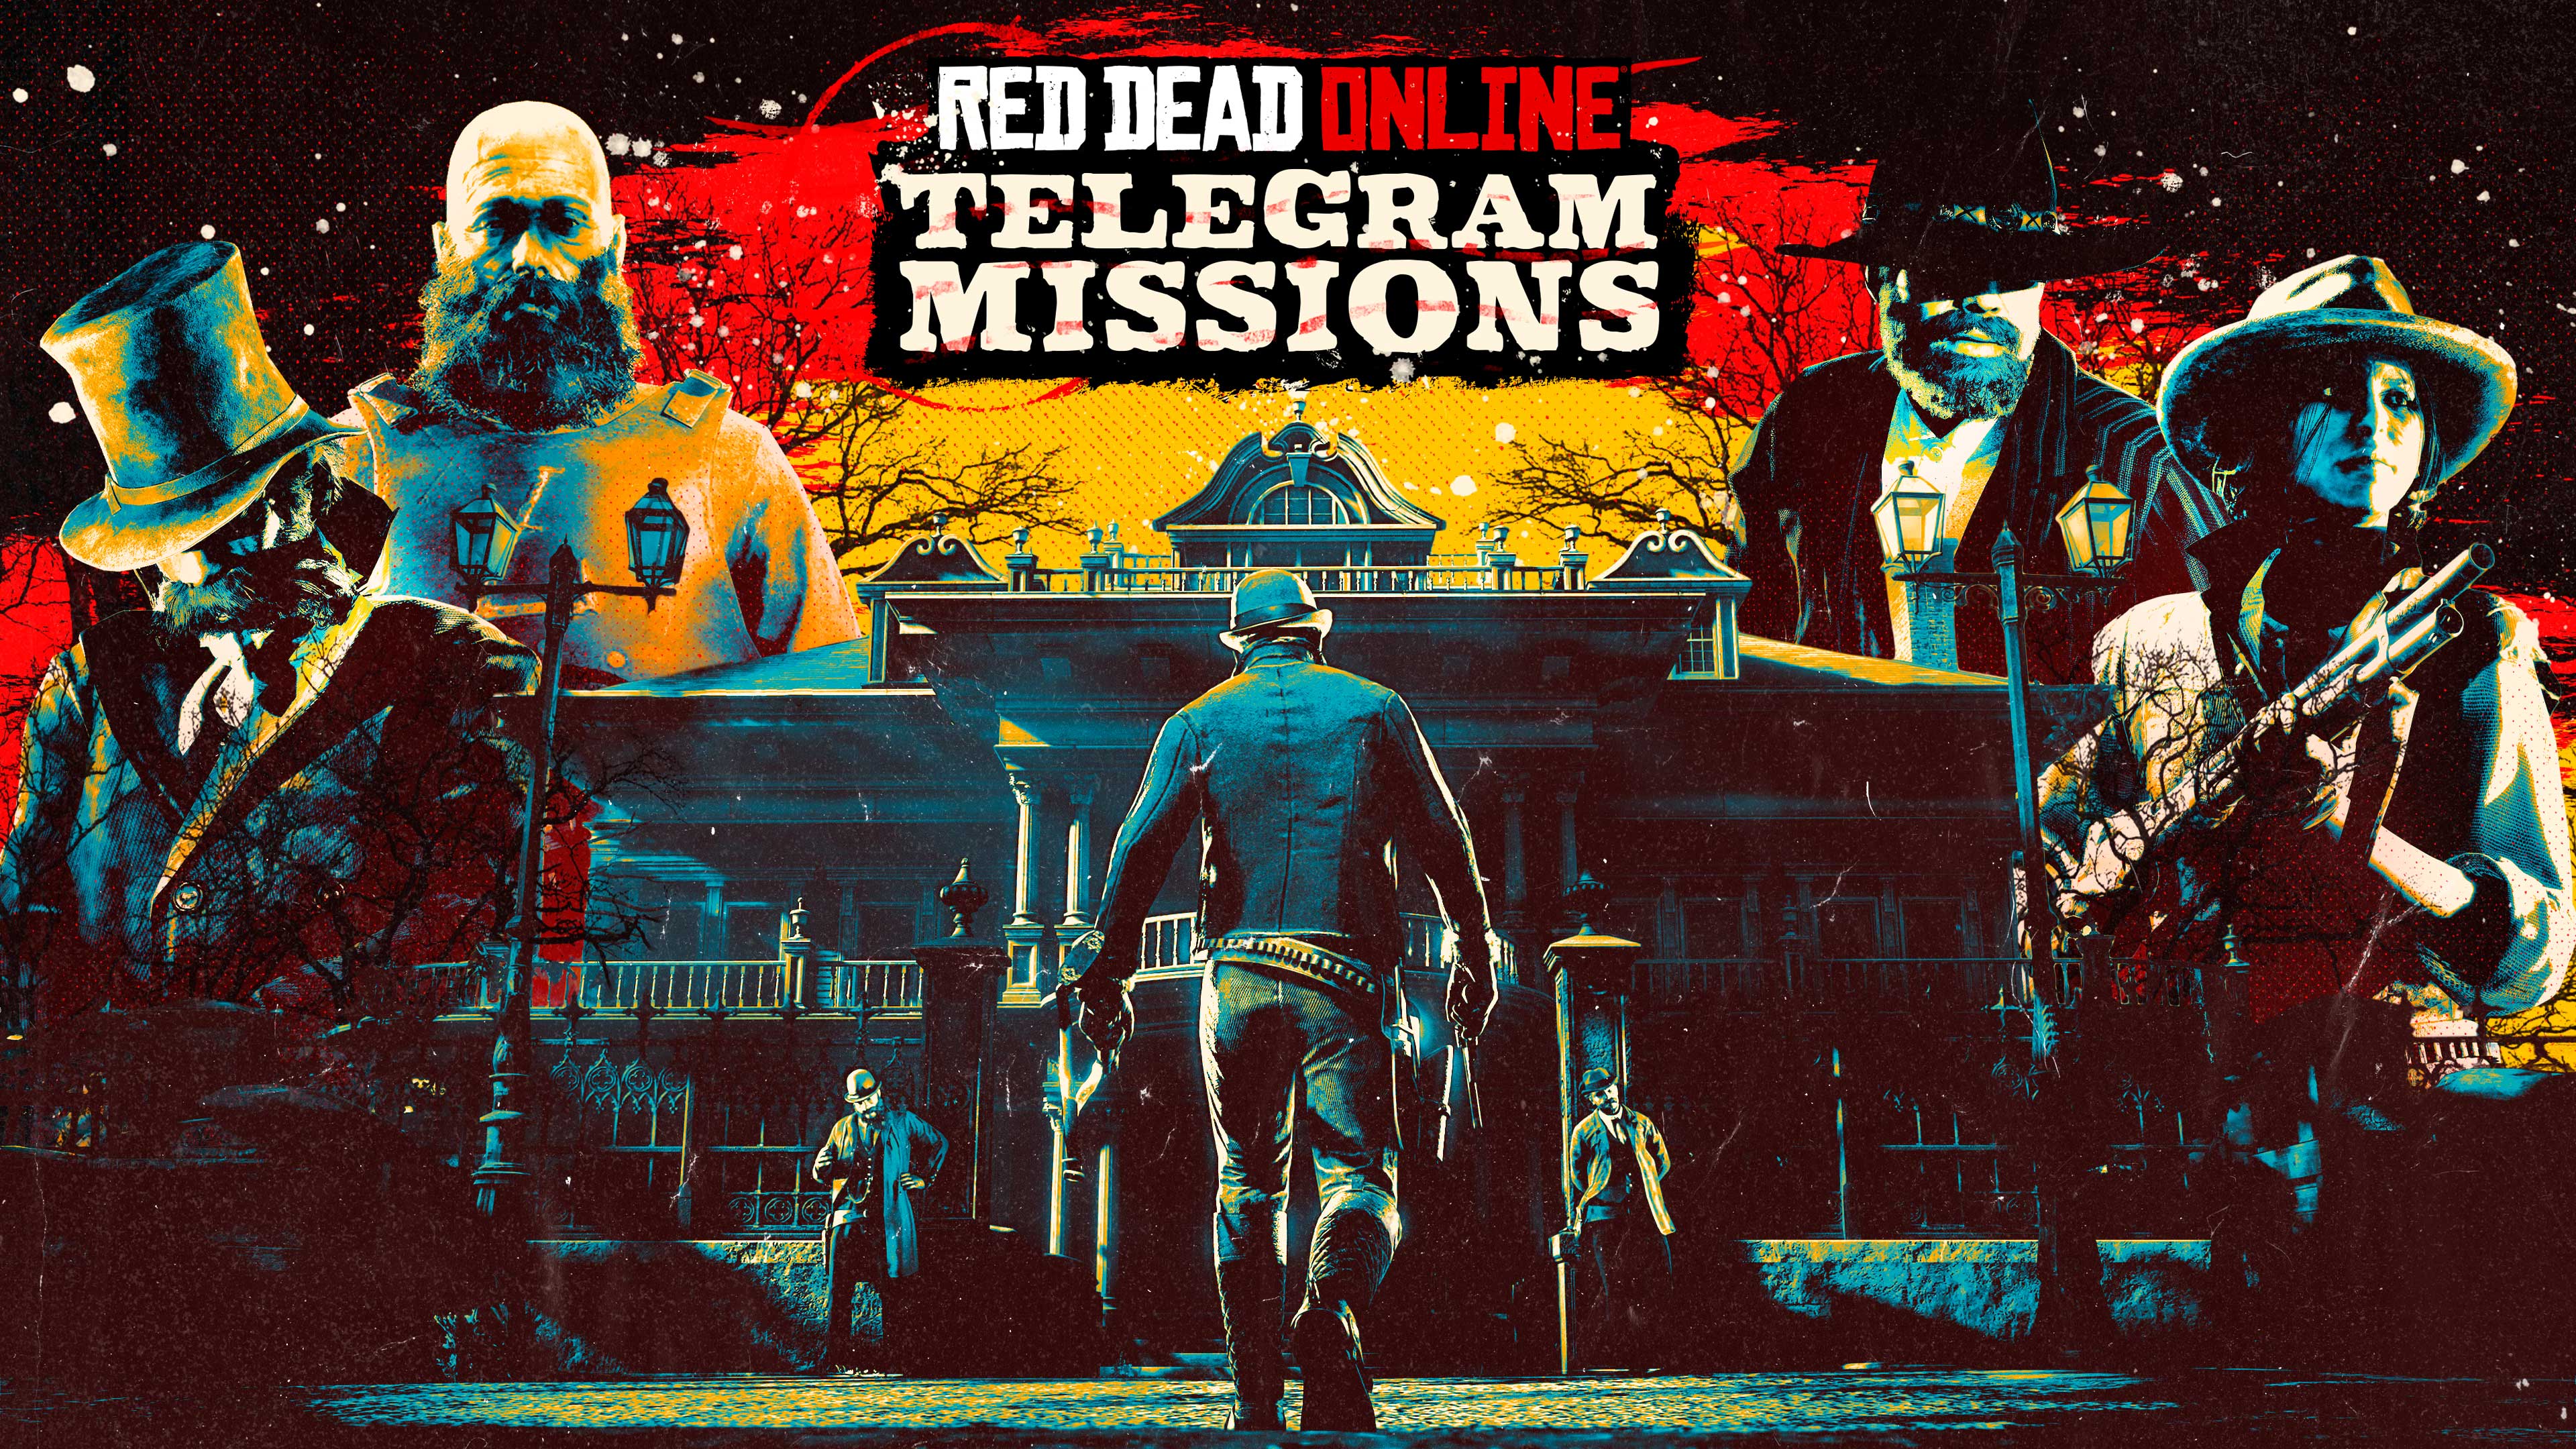 Cartel de Red Dead Online: misiones por telegrama